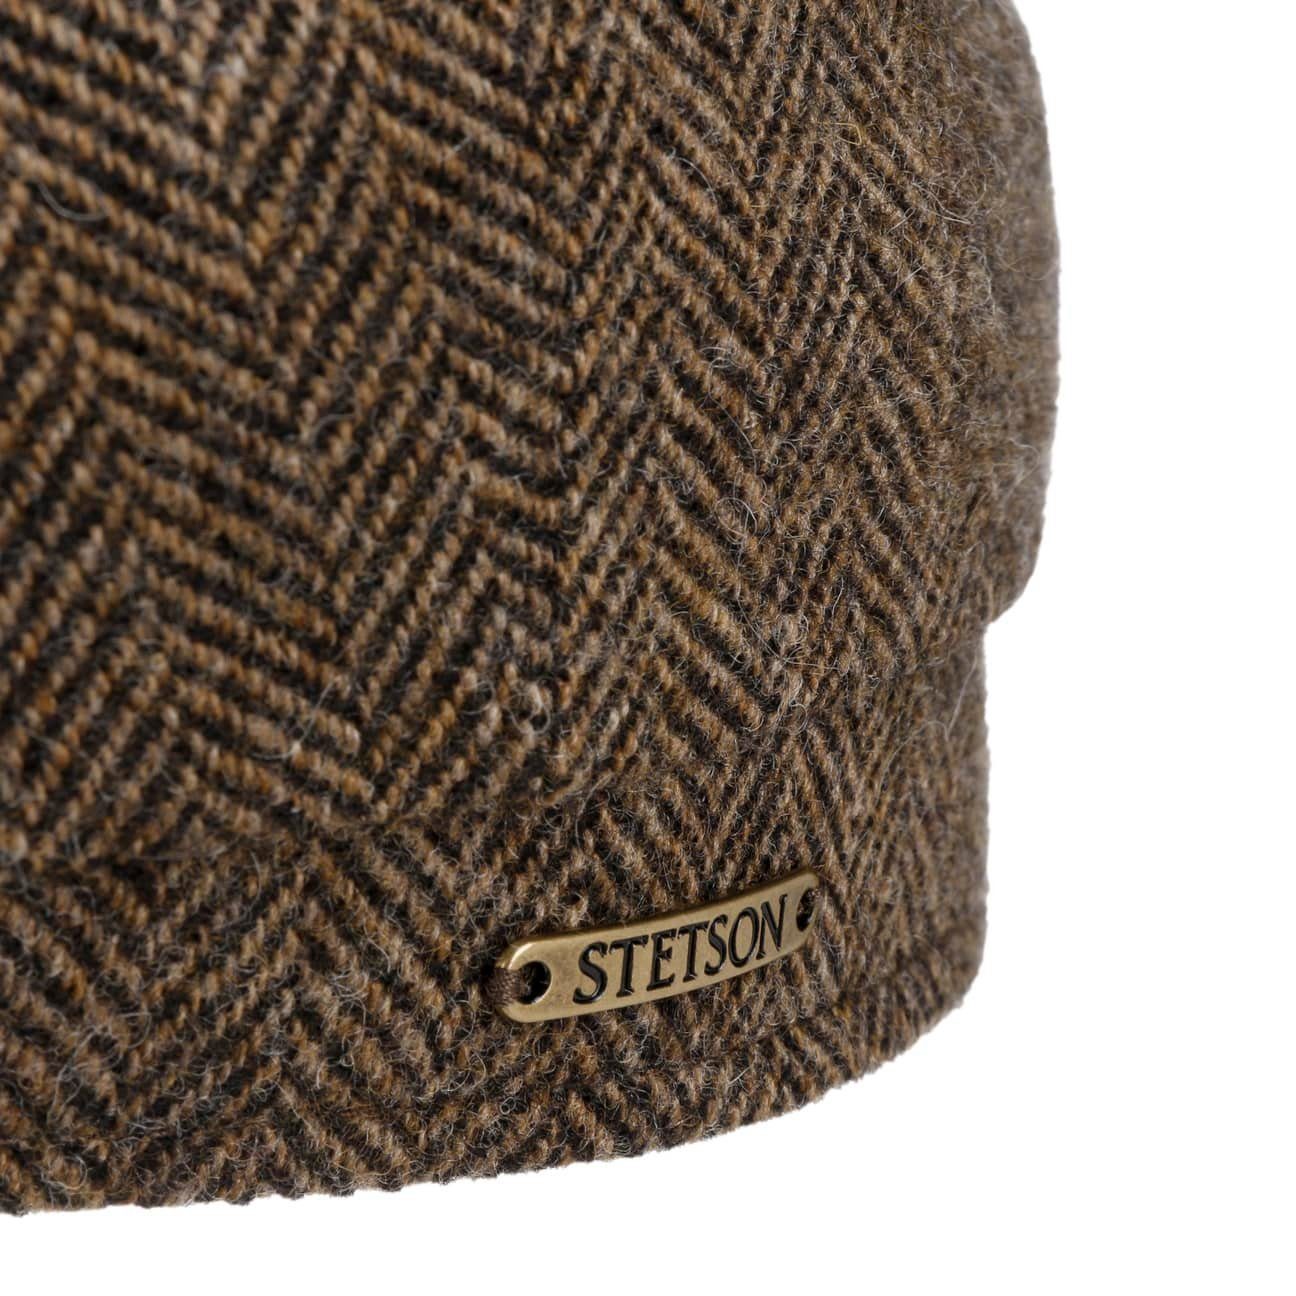 (1-St) Flat Cap braun-schwarz Flatcap Schirm mit Stetson